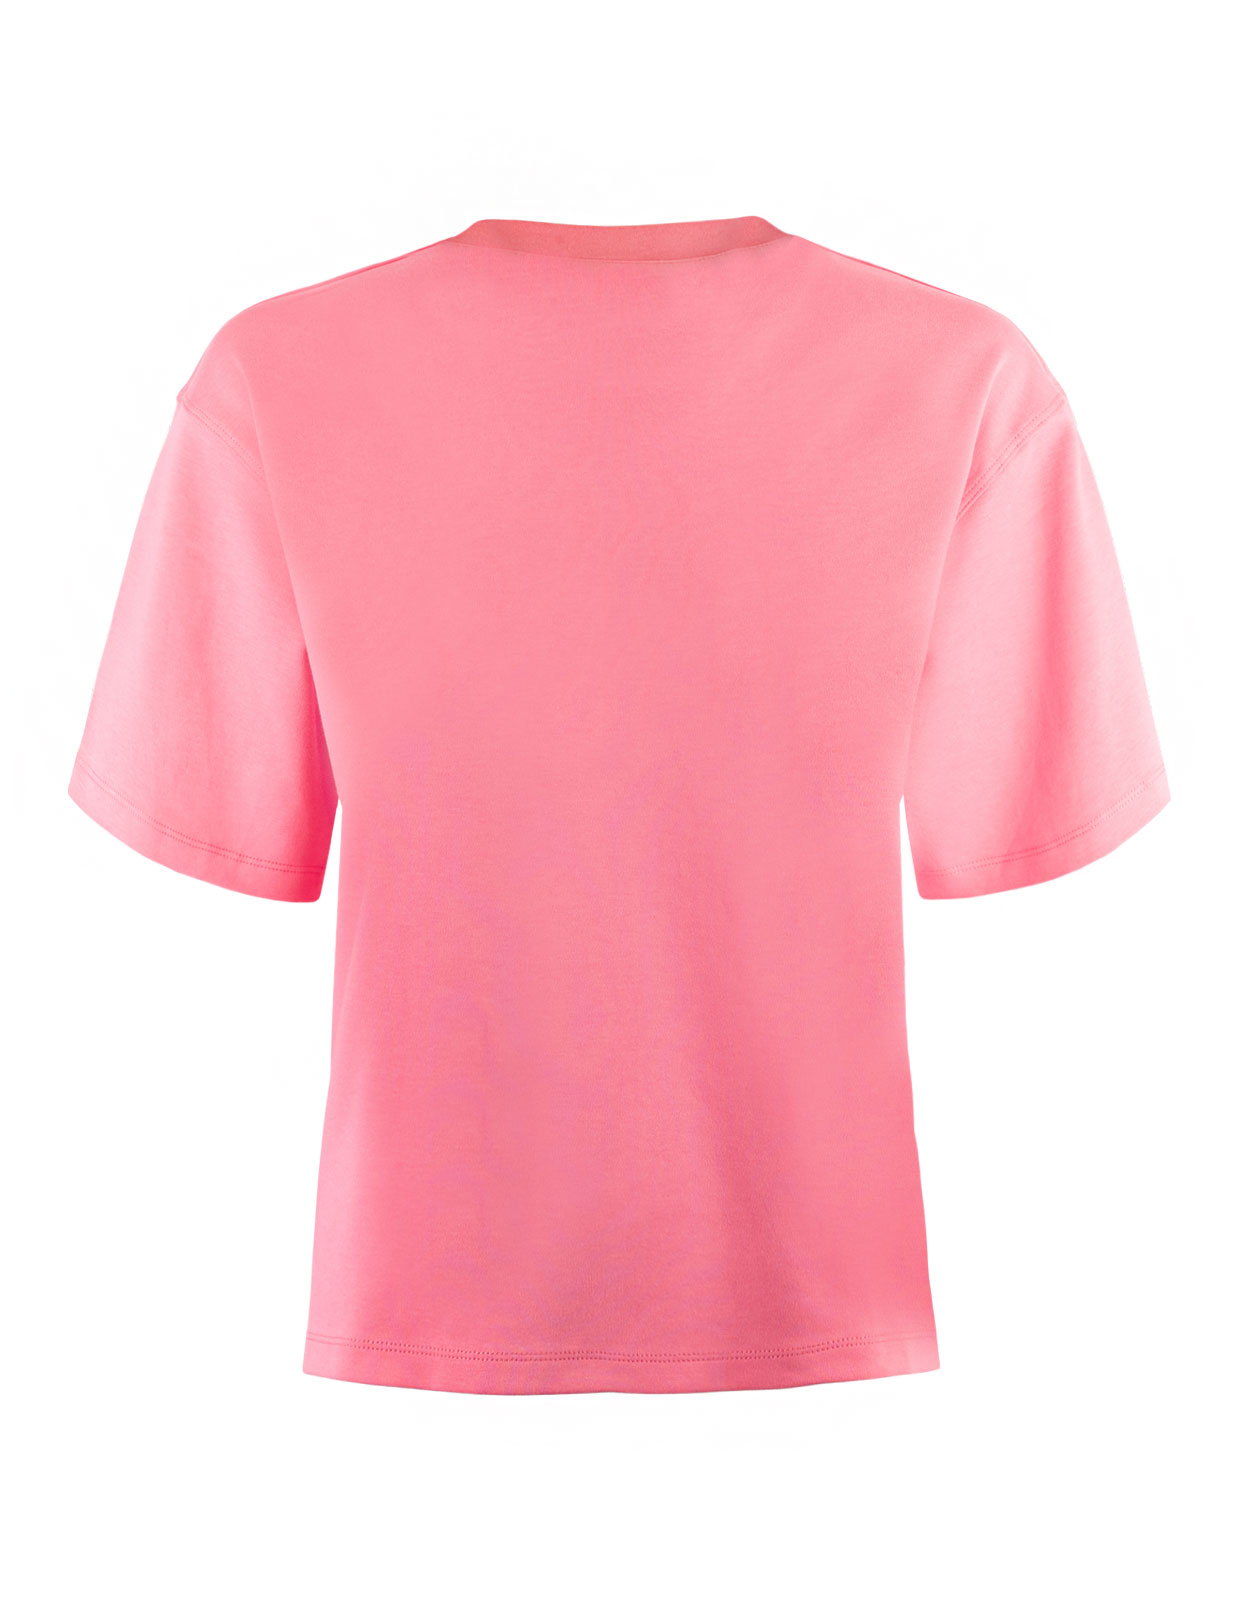 Enate T-Shirt Medium Pink